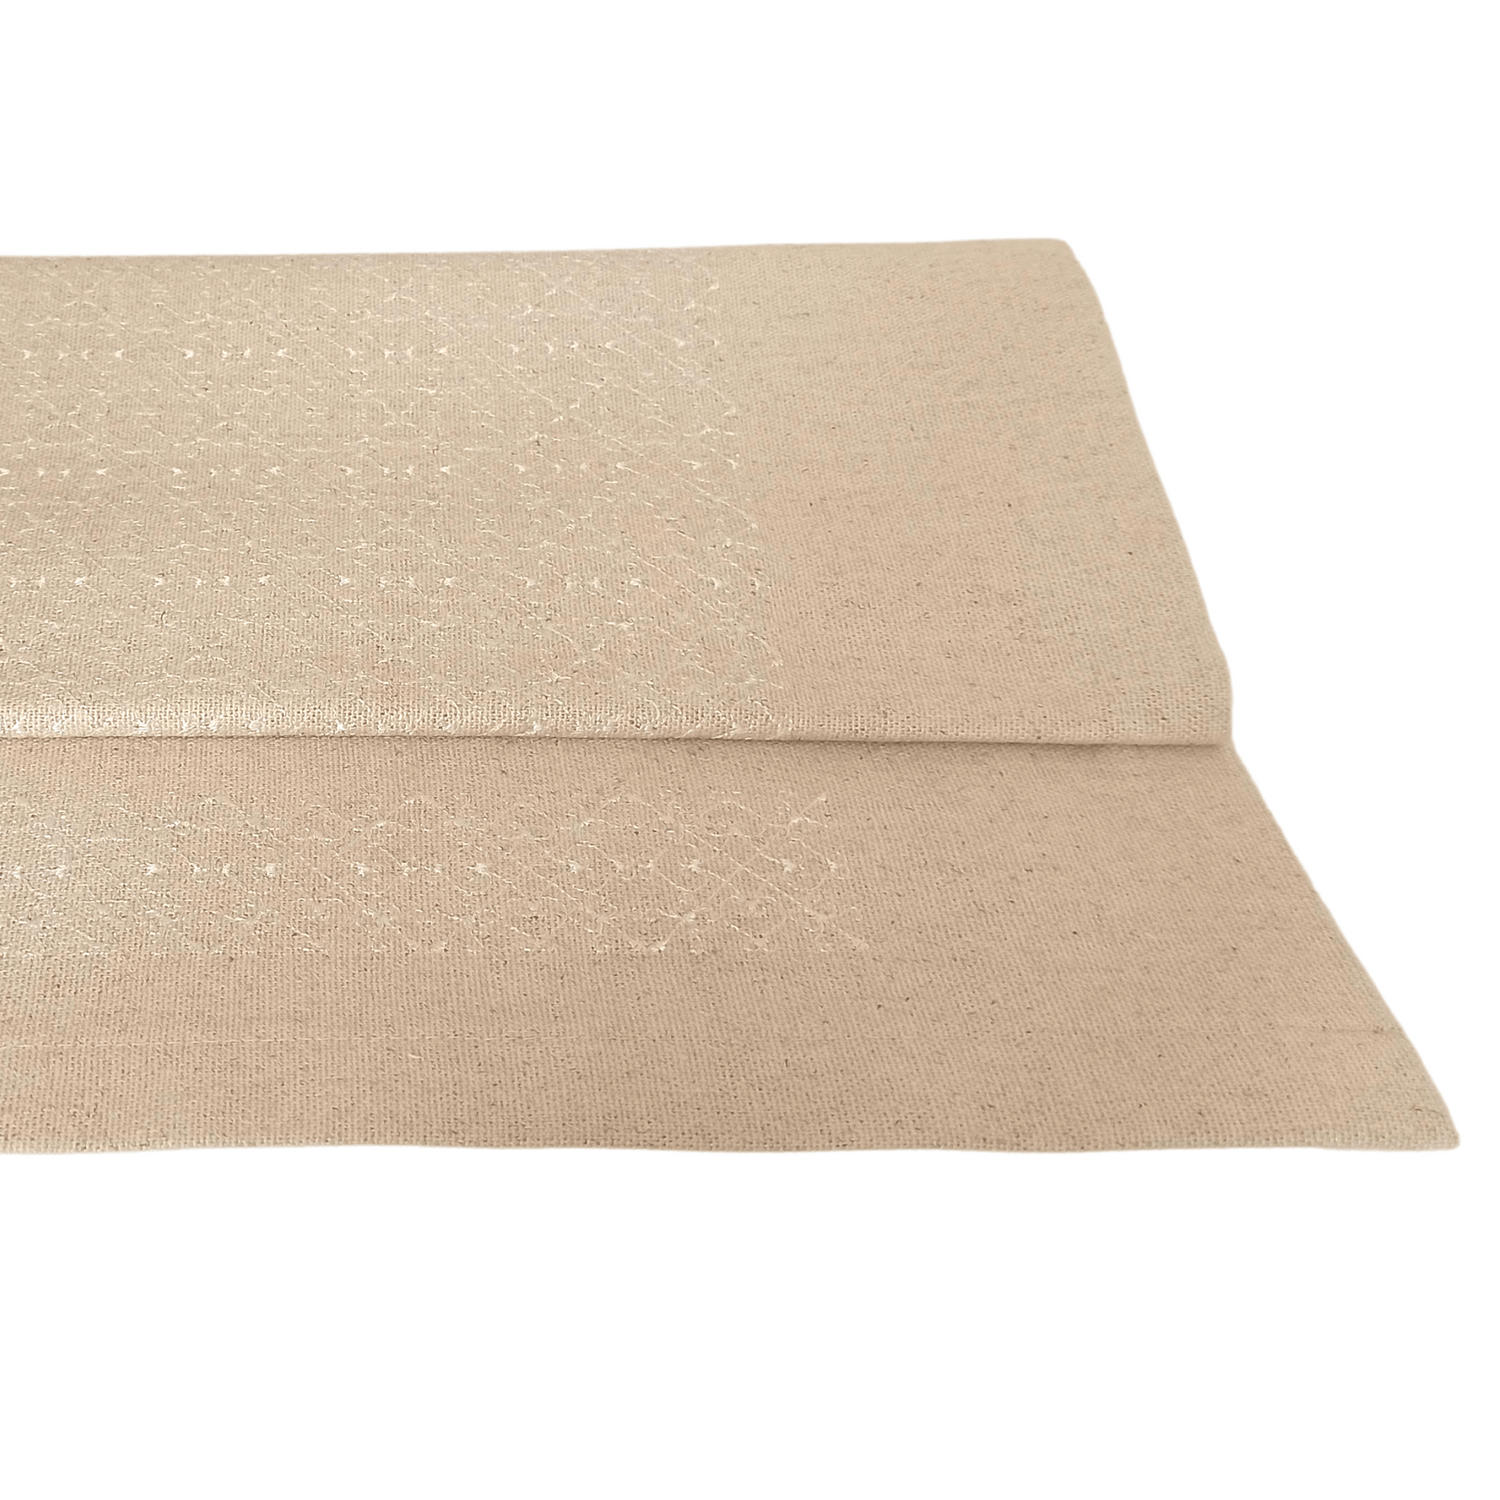 Linen Table Runner Portuguese Lace - 150cm x 45cm - White